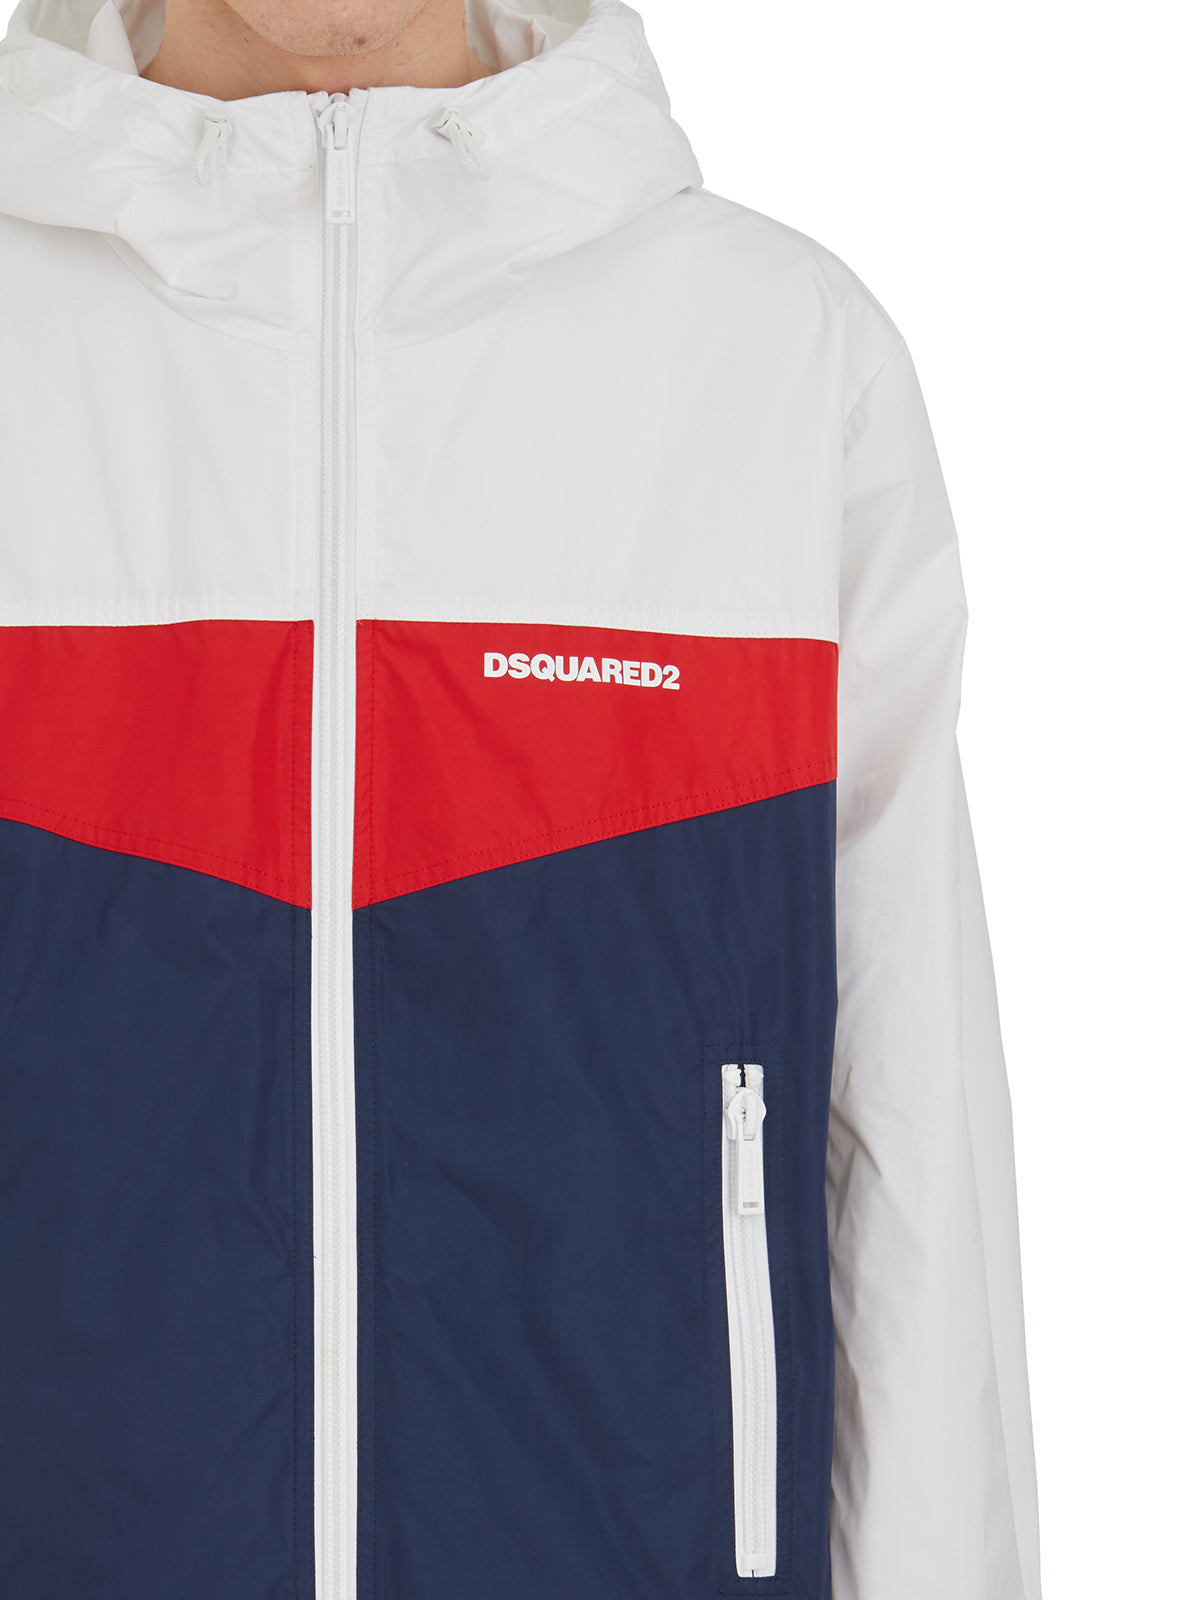 Shop Dsquared2 Multicolor 90's Jacket: Premium Fashion For Men